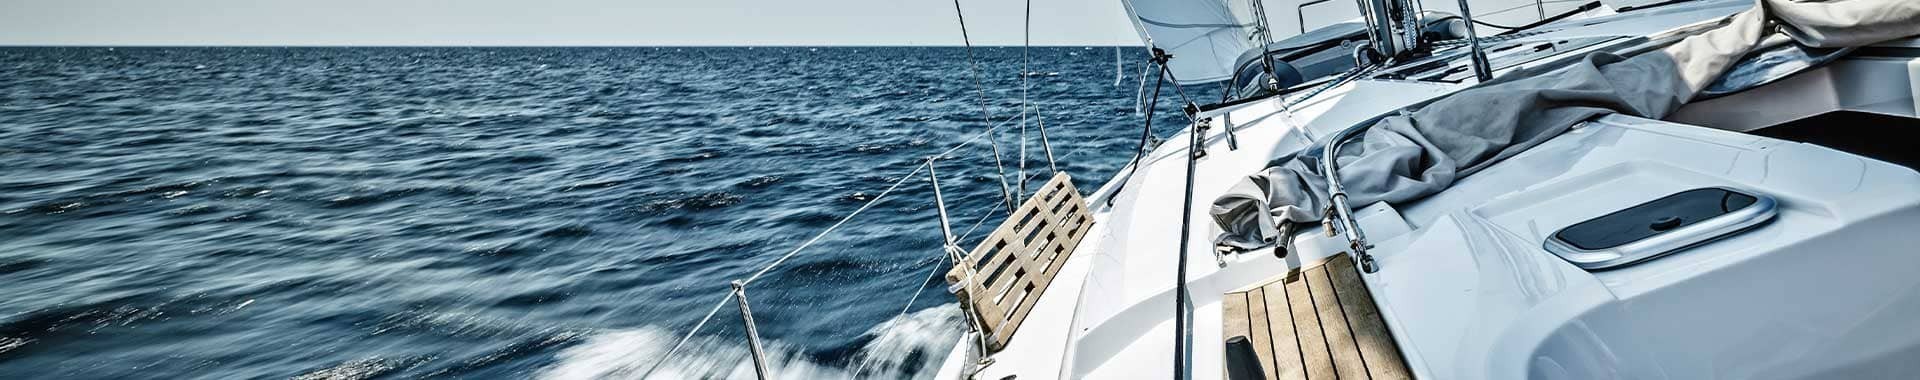 Tin of Sea Bream Boat & Aeration - Comptoir Nautique